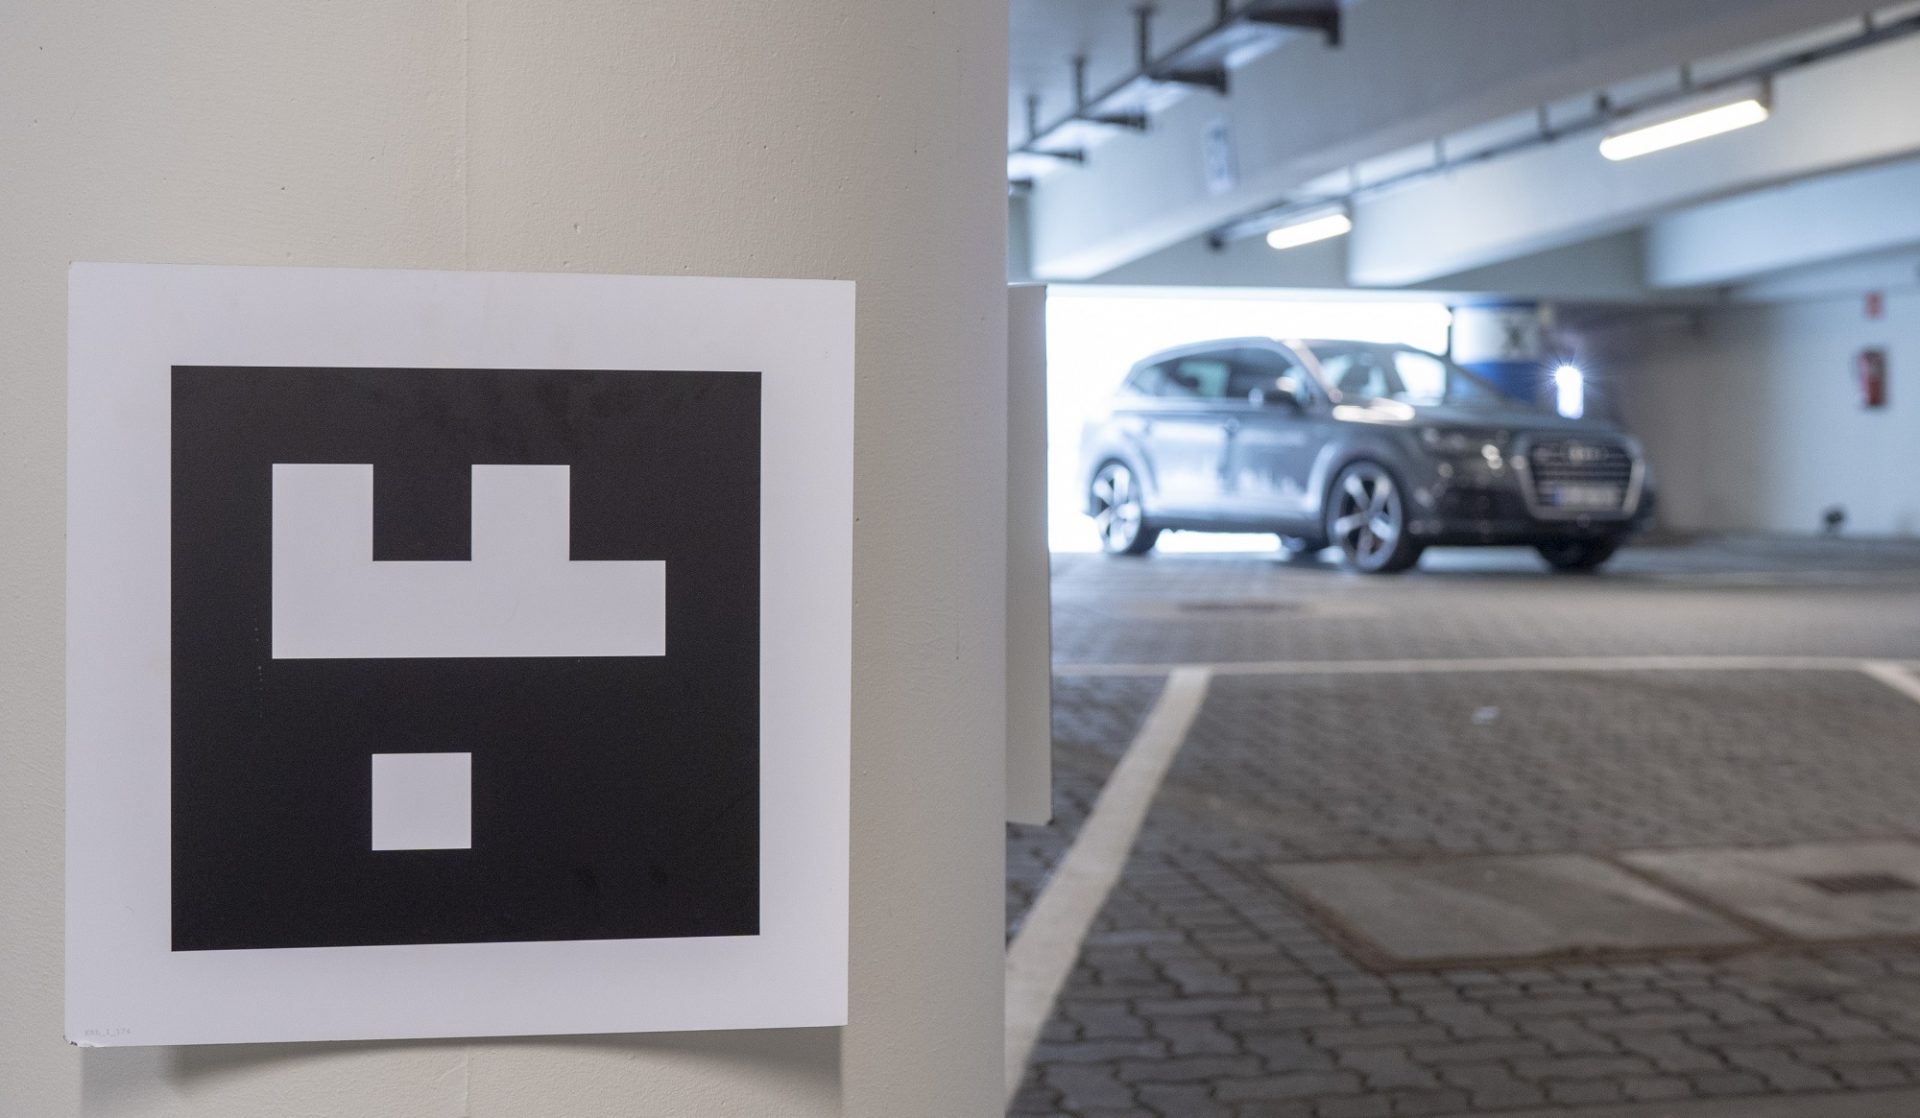 Test de stationnement autonome. Avec les marqueurs figuratifs installés à l’aéroport de Hambourg, les véhicules pilotes trouvent une place de parking libre.  